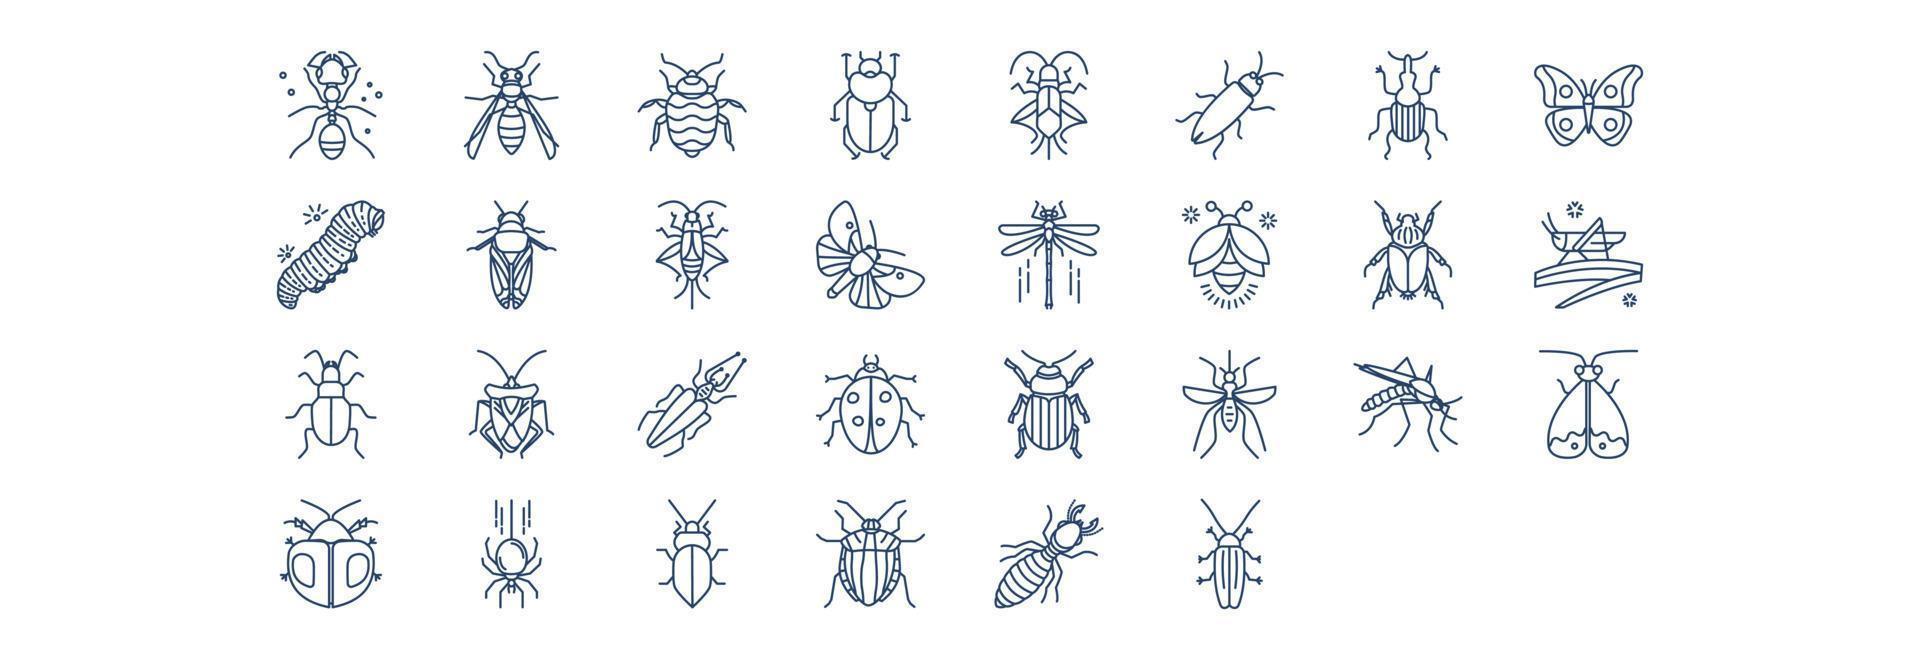 samling av ikoner relaterad till buggar och insekter, Inklusive ikoner tycka om myra, skalbagge, boxelder och Mer. vektor illustrationer, pixel perfekt uppsättning